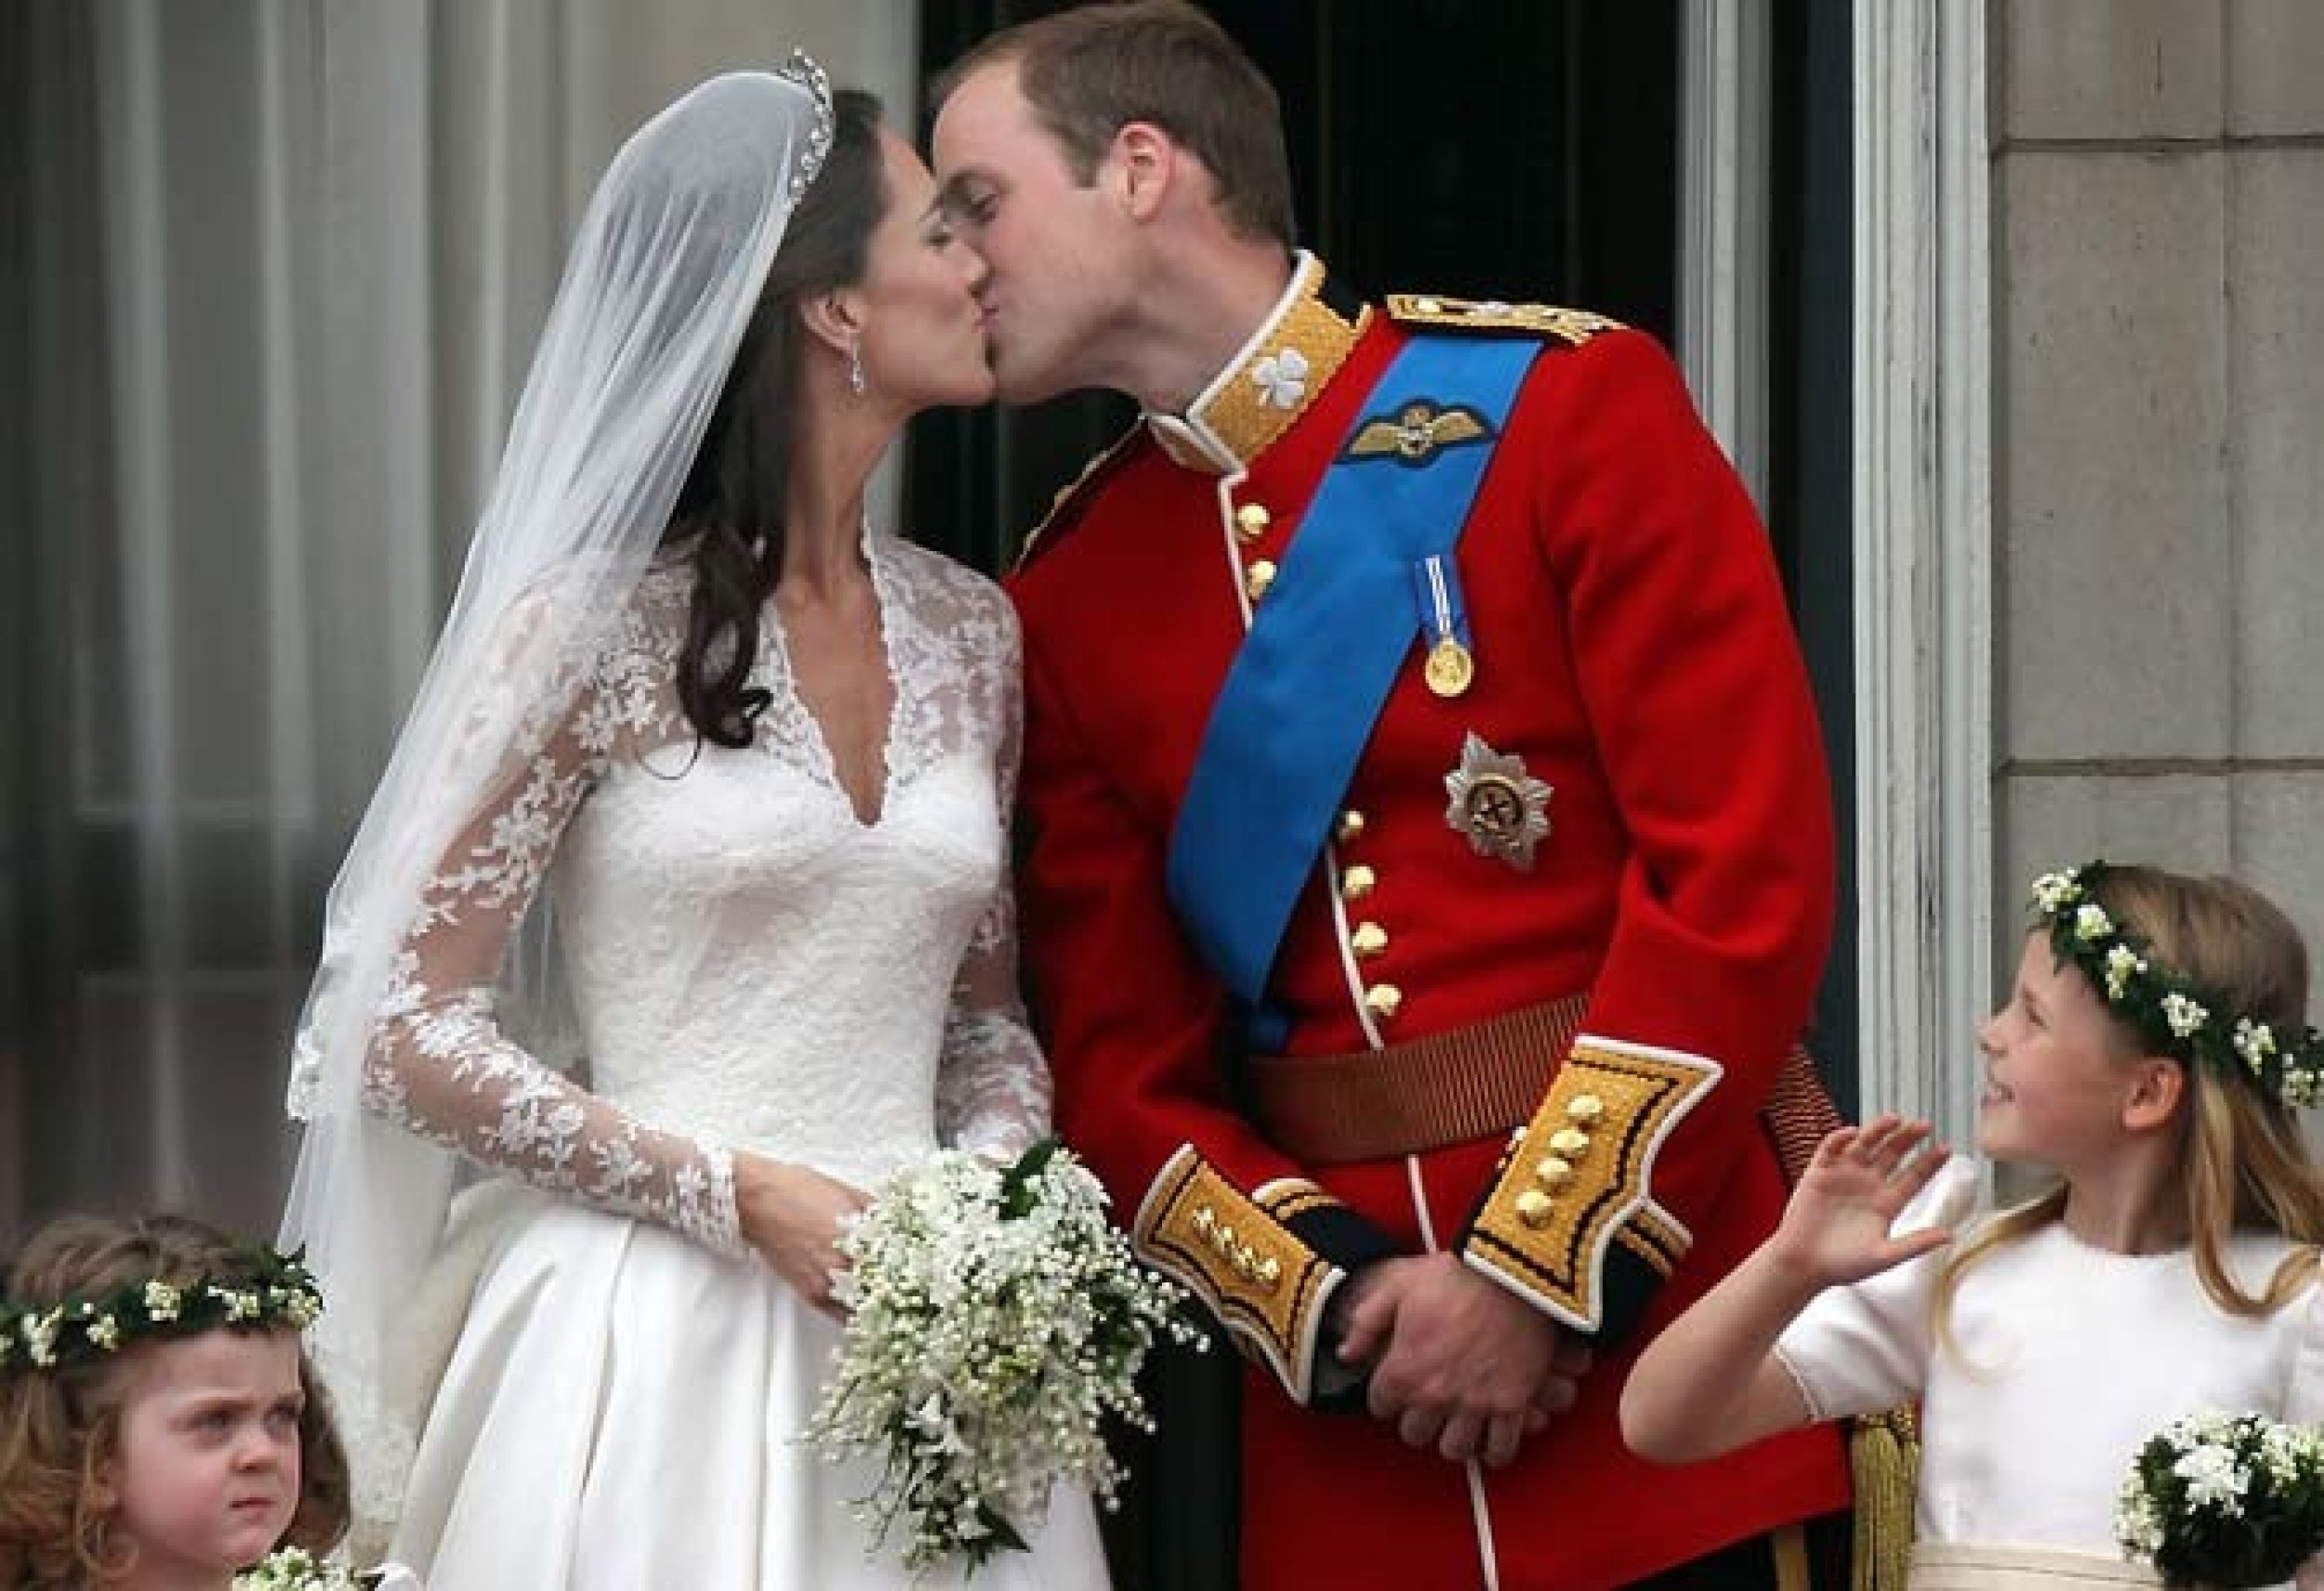 Kate Middleton  Price William Kiss On Wedding Day